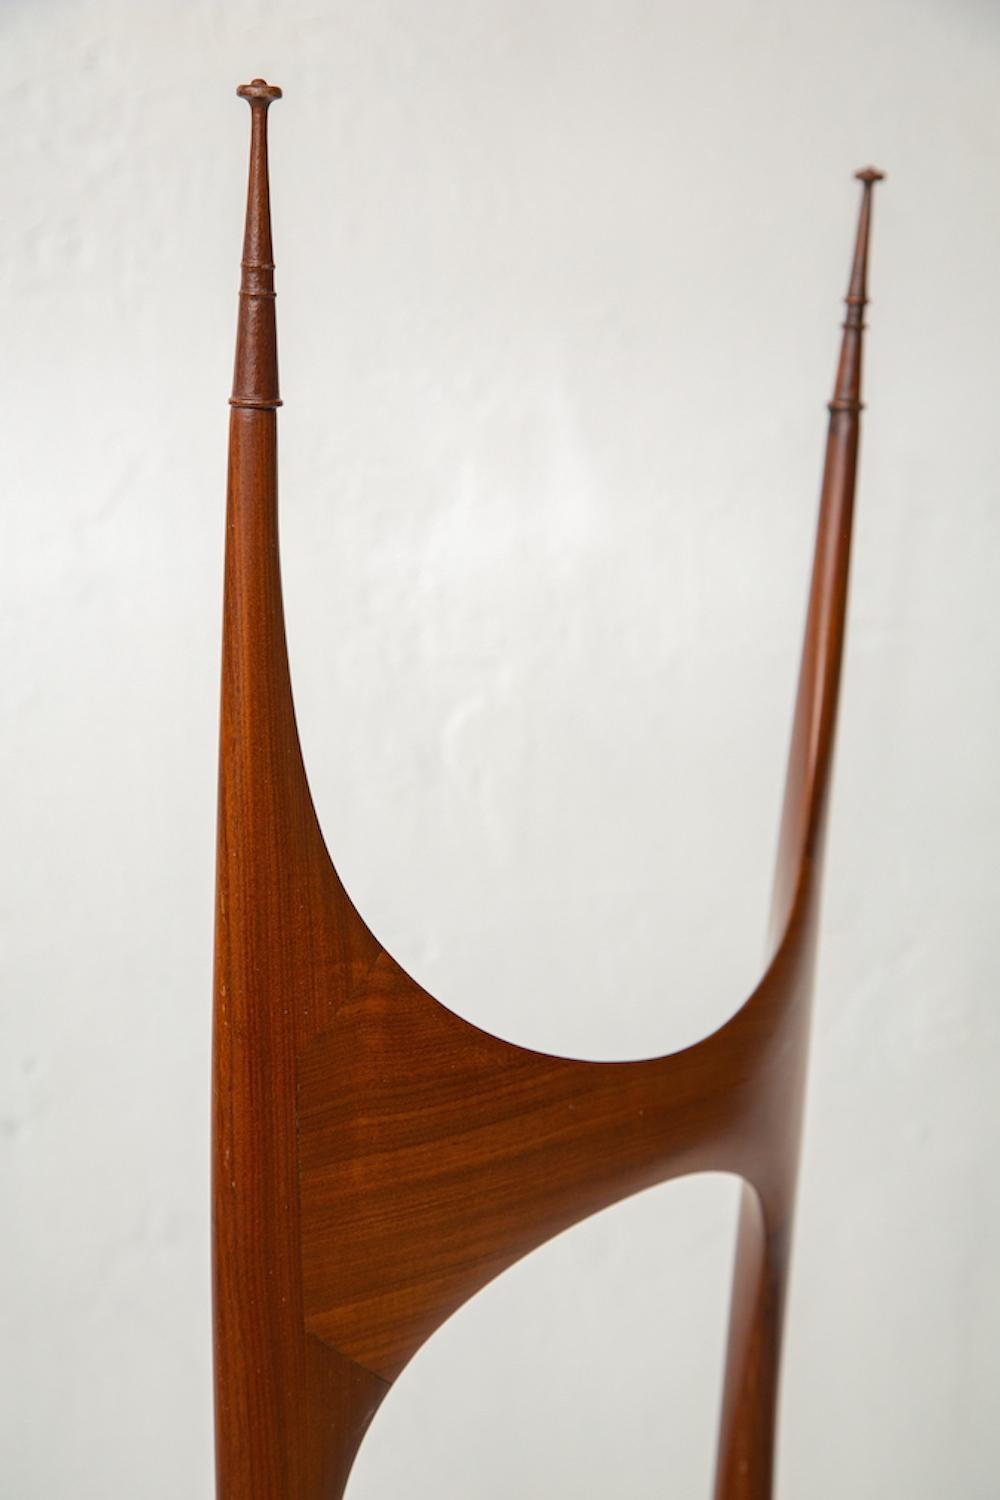 Pair of Mahogany Mid-Century Italian Tall Back Chairs by Pozzi and Verga 3